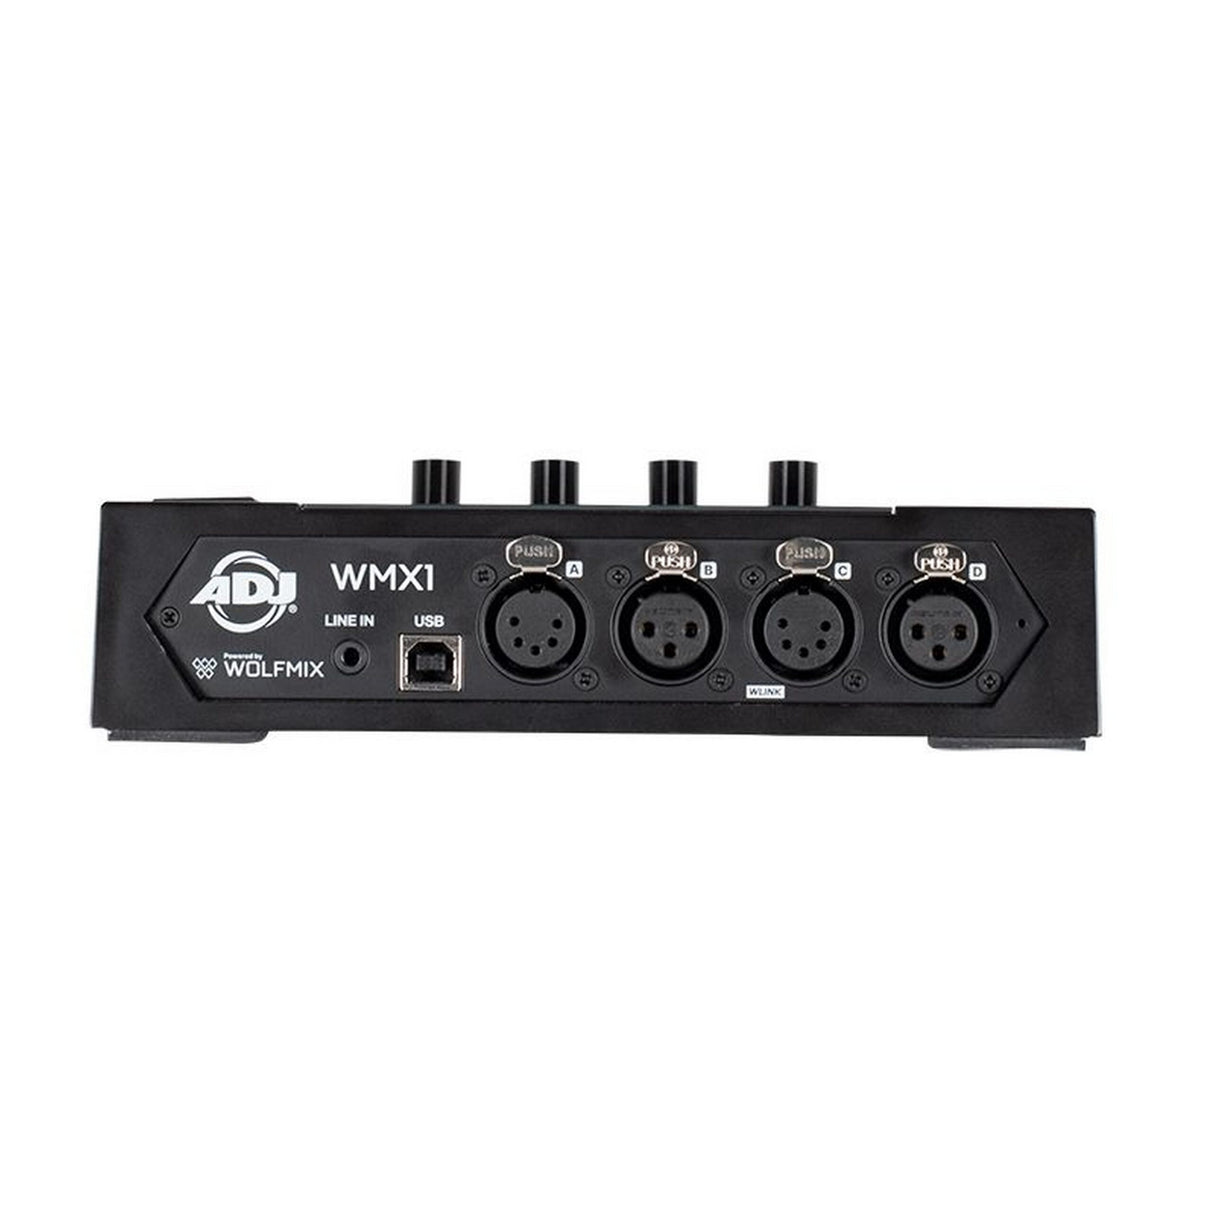 ADJ WMX1 DMX Lighting Control System